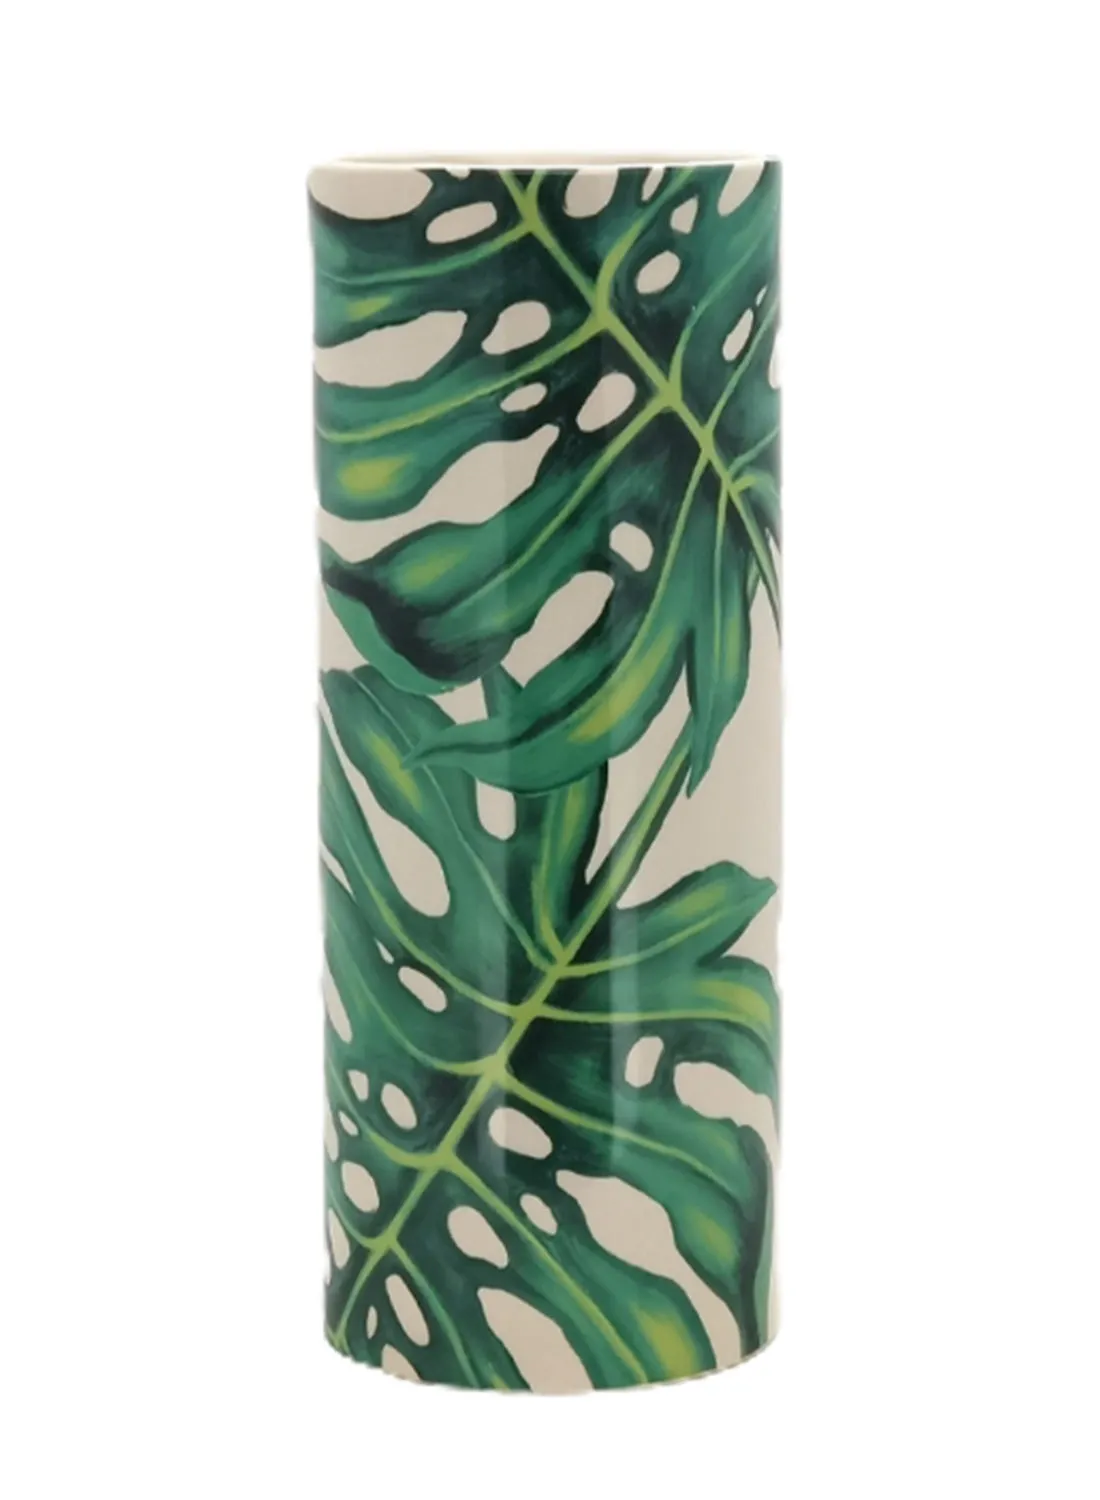 مزهرية سيراميك ذات تصميمات جميلة ، مواد ذات جودة فريدة فريدة من نوعها لمنزل أنيق ومثالي N13-004 أبيض / أخضر 17.5 × 45 سم